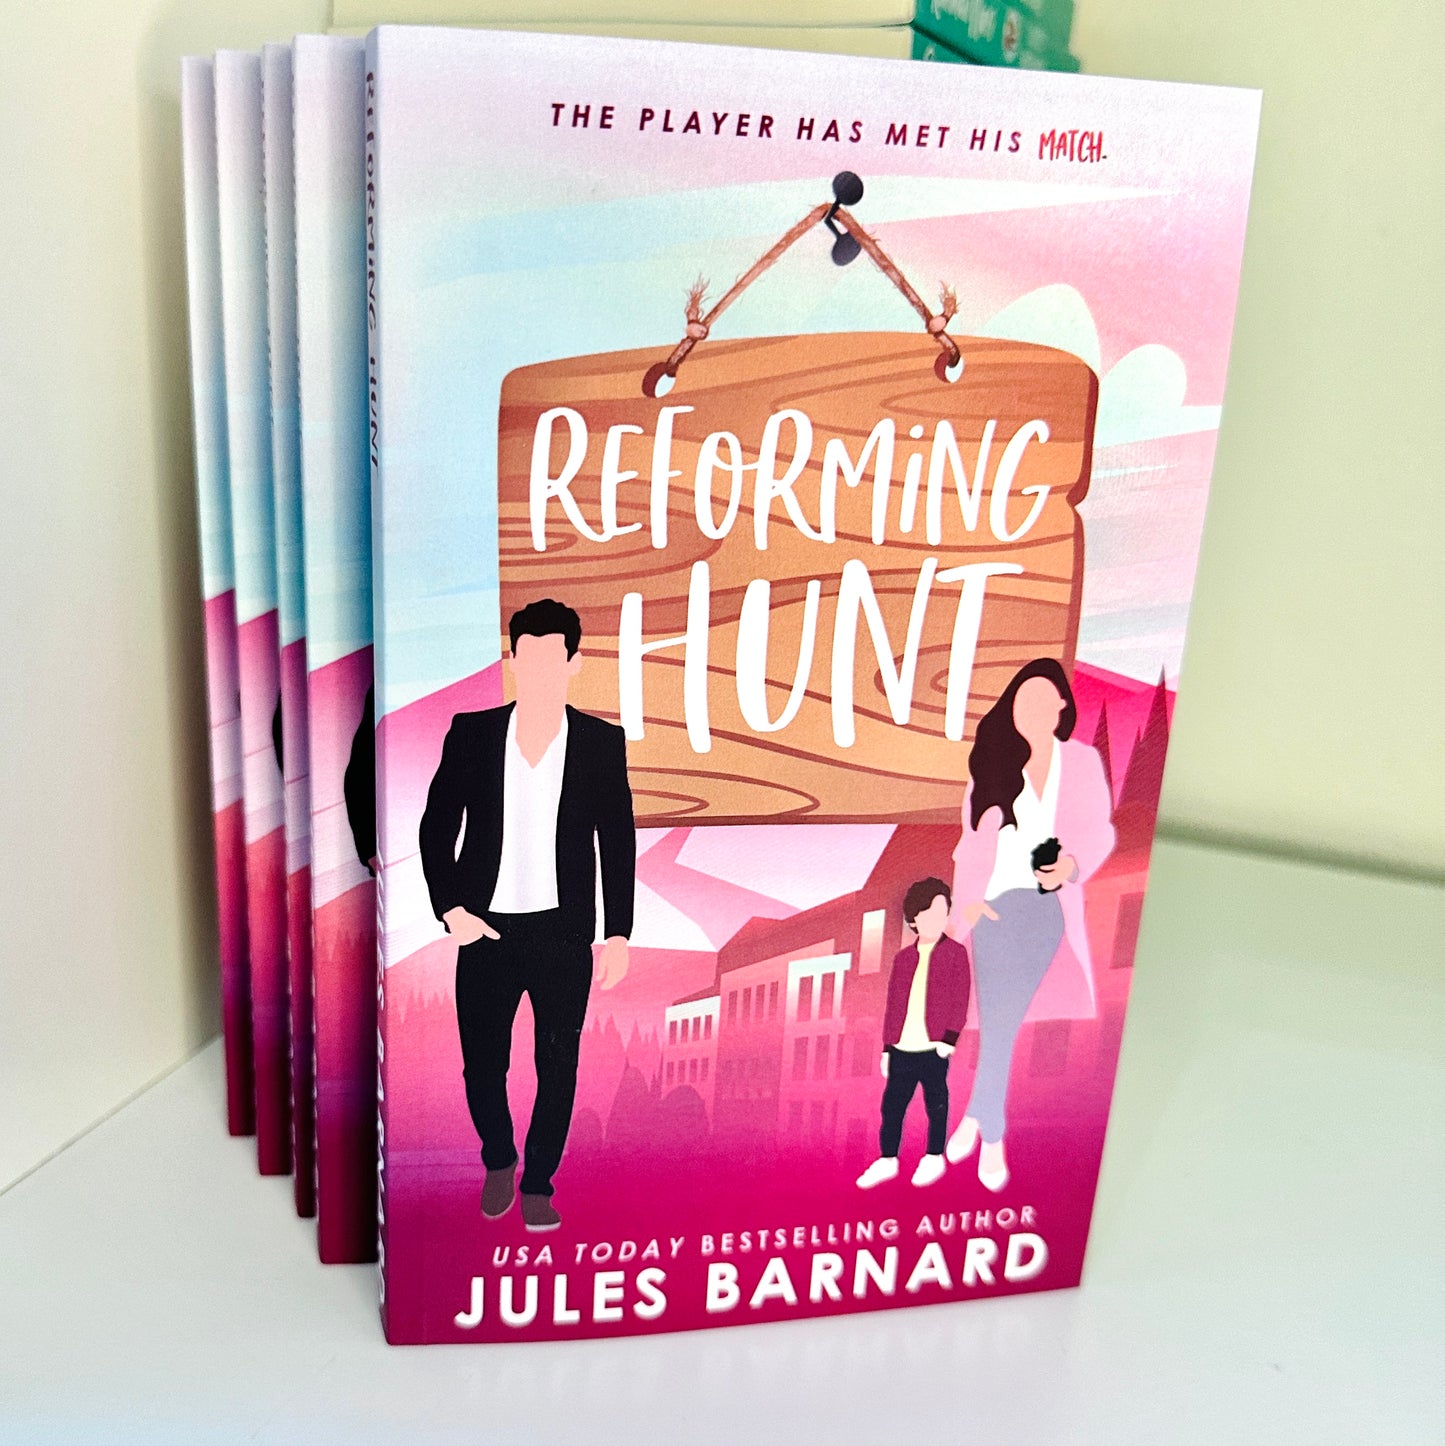 Reforming Hunt -- Illustrated Paperback, Signed Copy